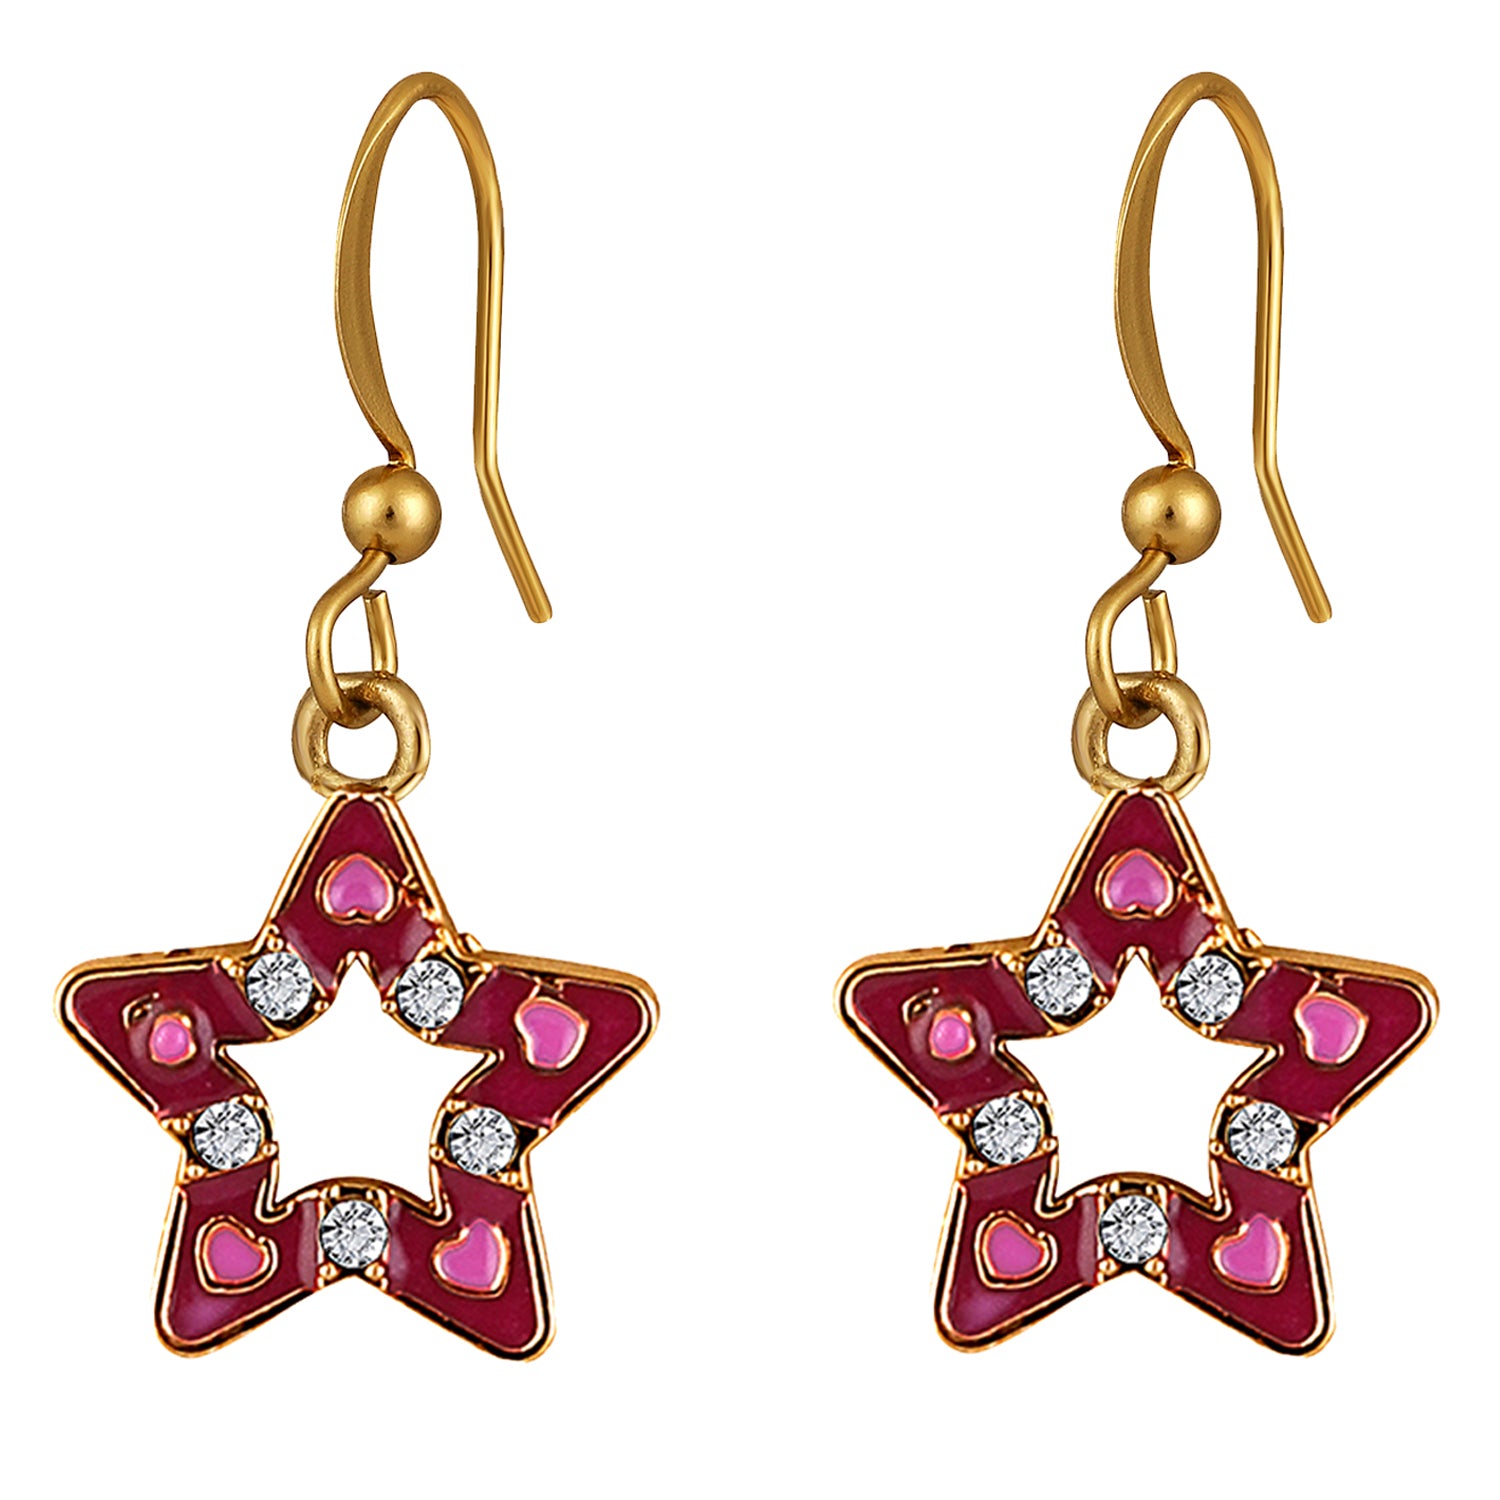 Red Meenakari Work and Crystals Star Earrings